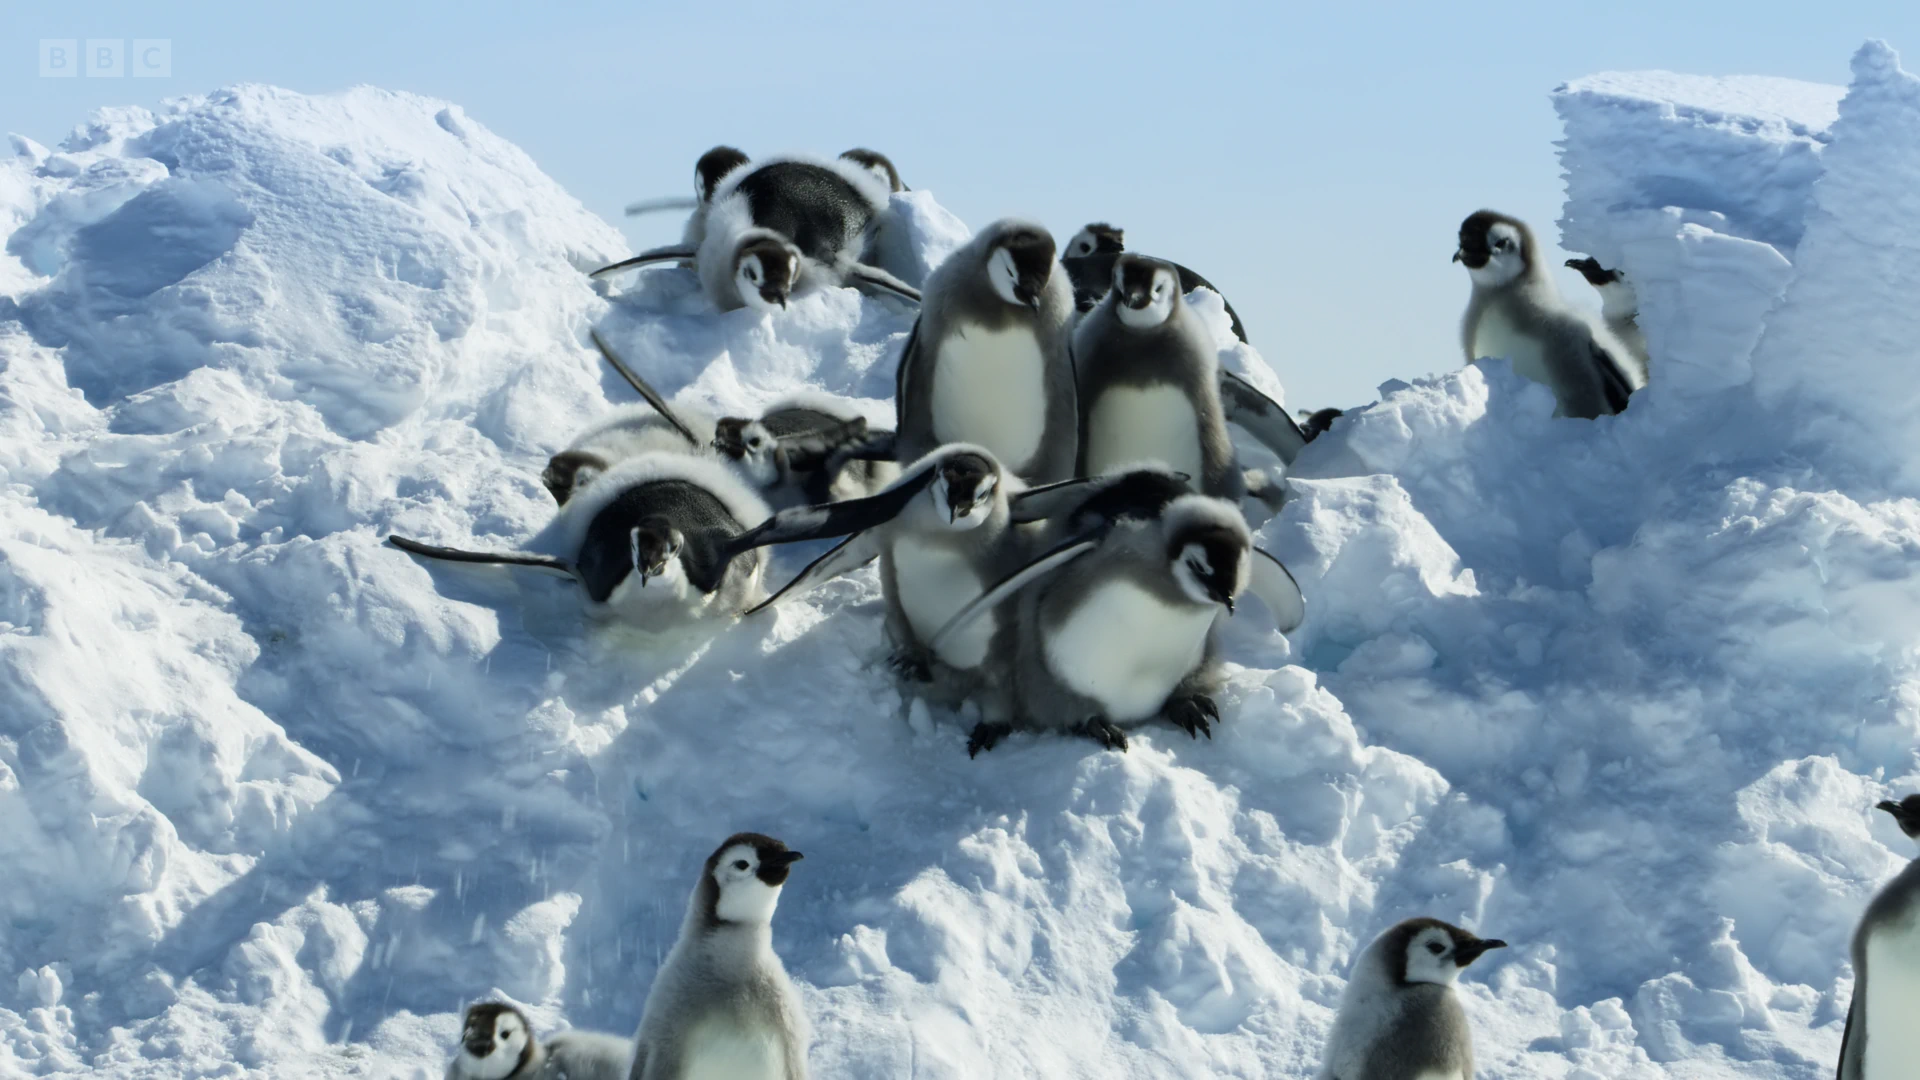 Emperor penguin (Aptenodytes forsteri) as shown in Frozen Planet II - Frozen Worlds